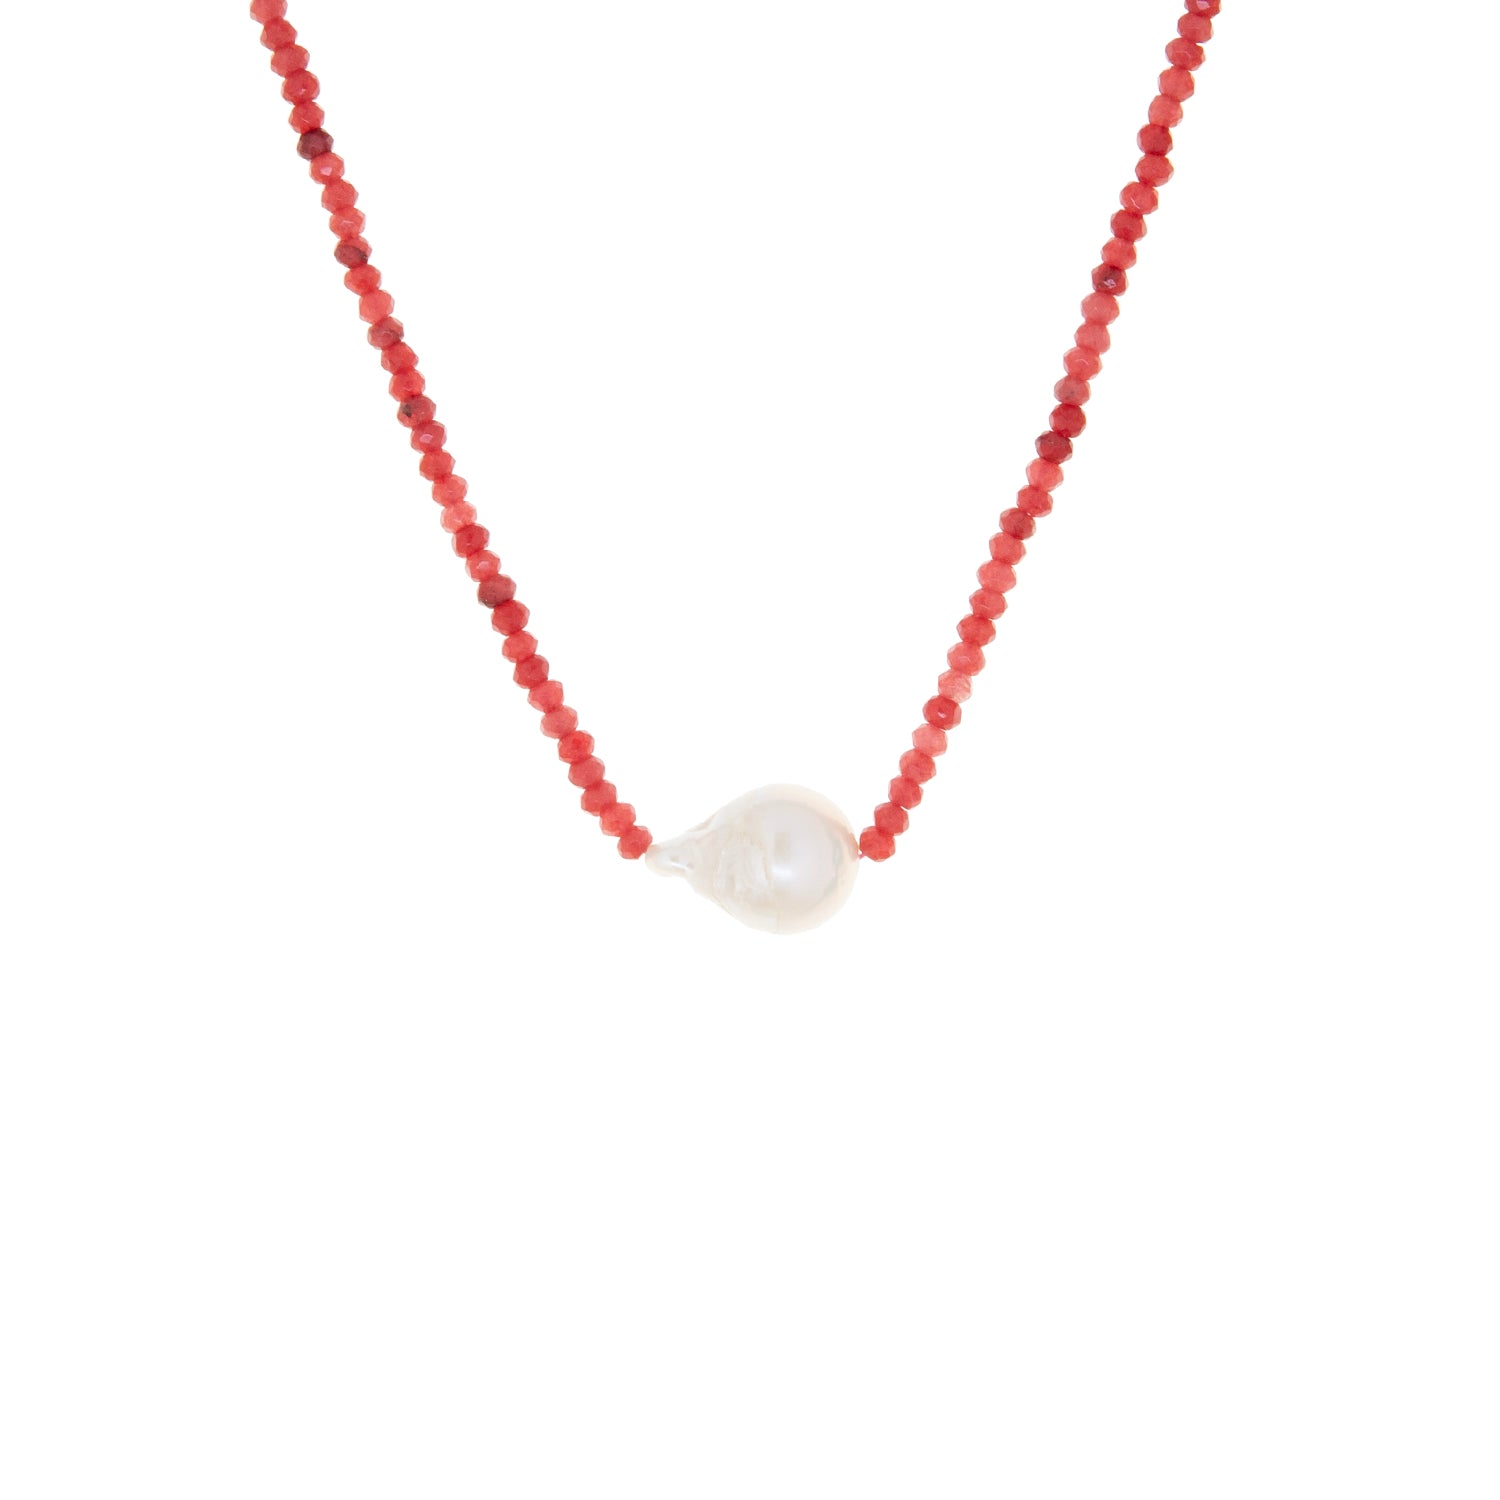 semi-precious stone necklace with pearl